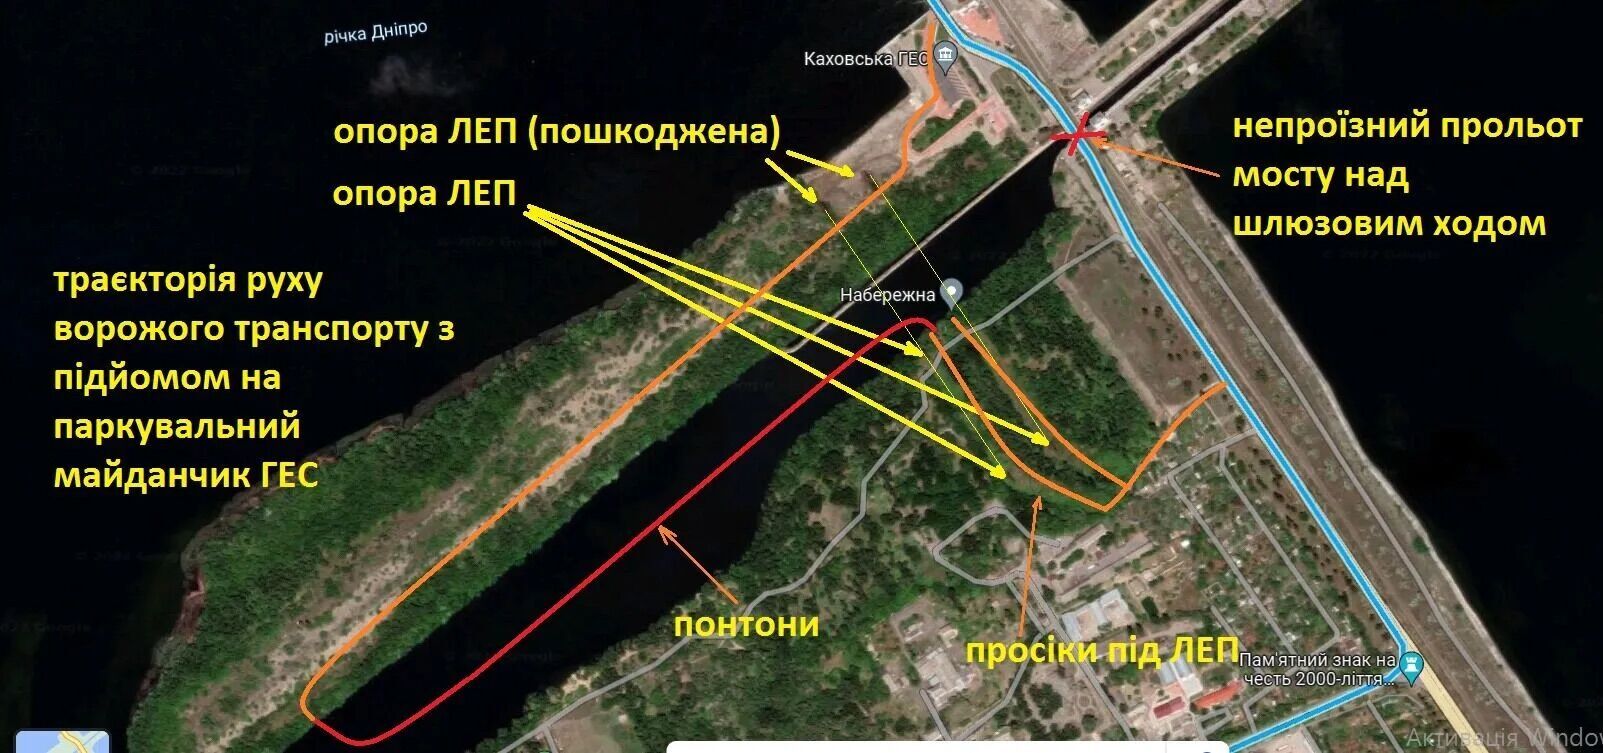 Схема функционирования вражеской переправы в обход шлюзов Каховской ГЭС